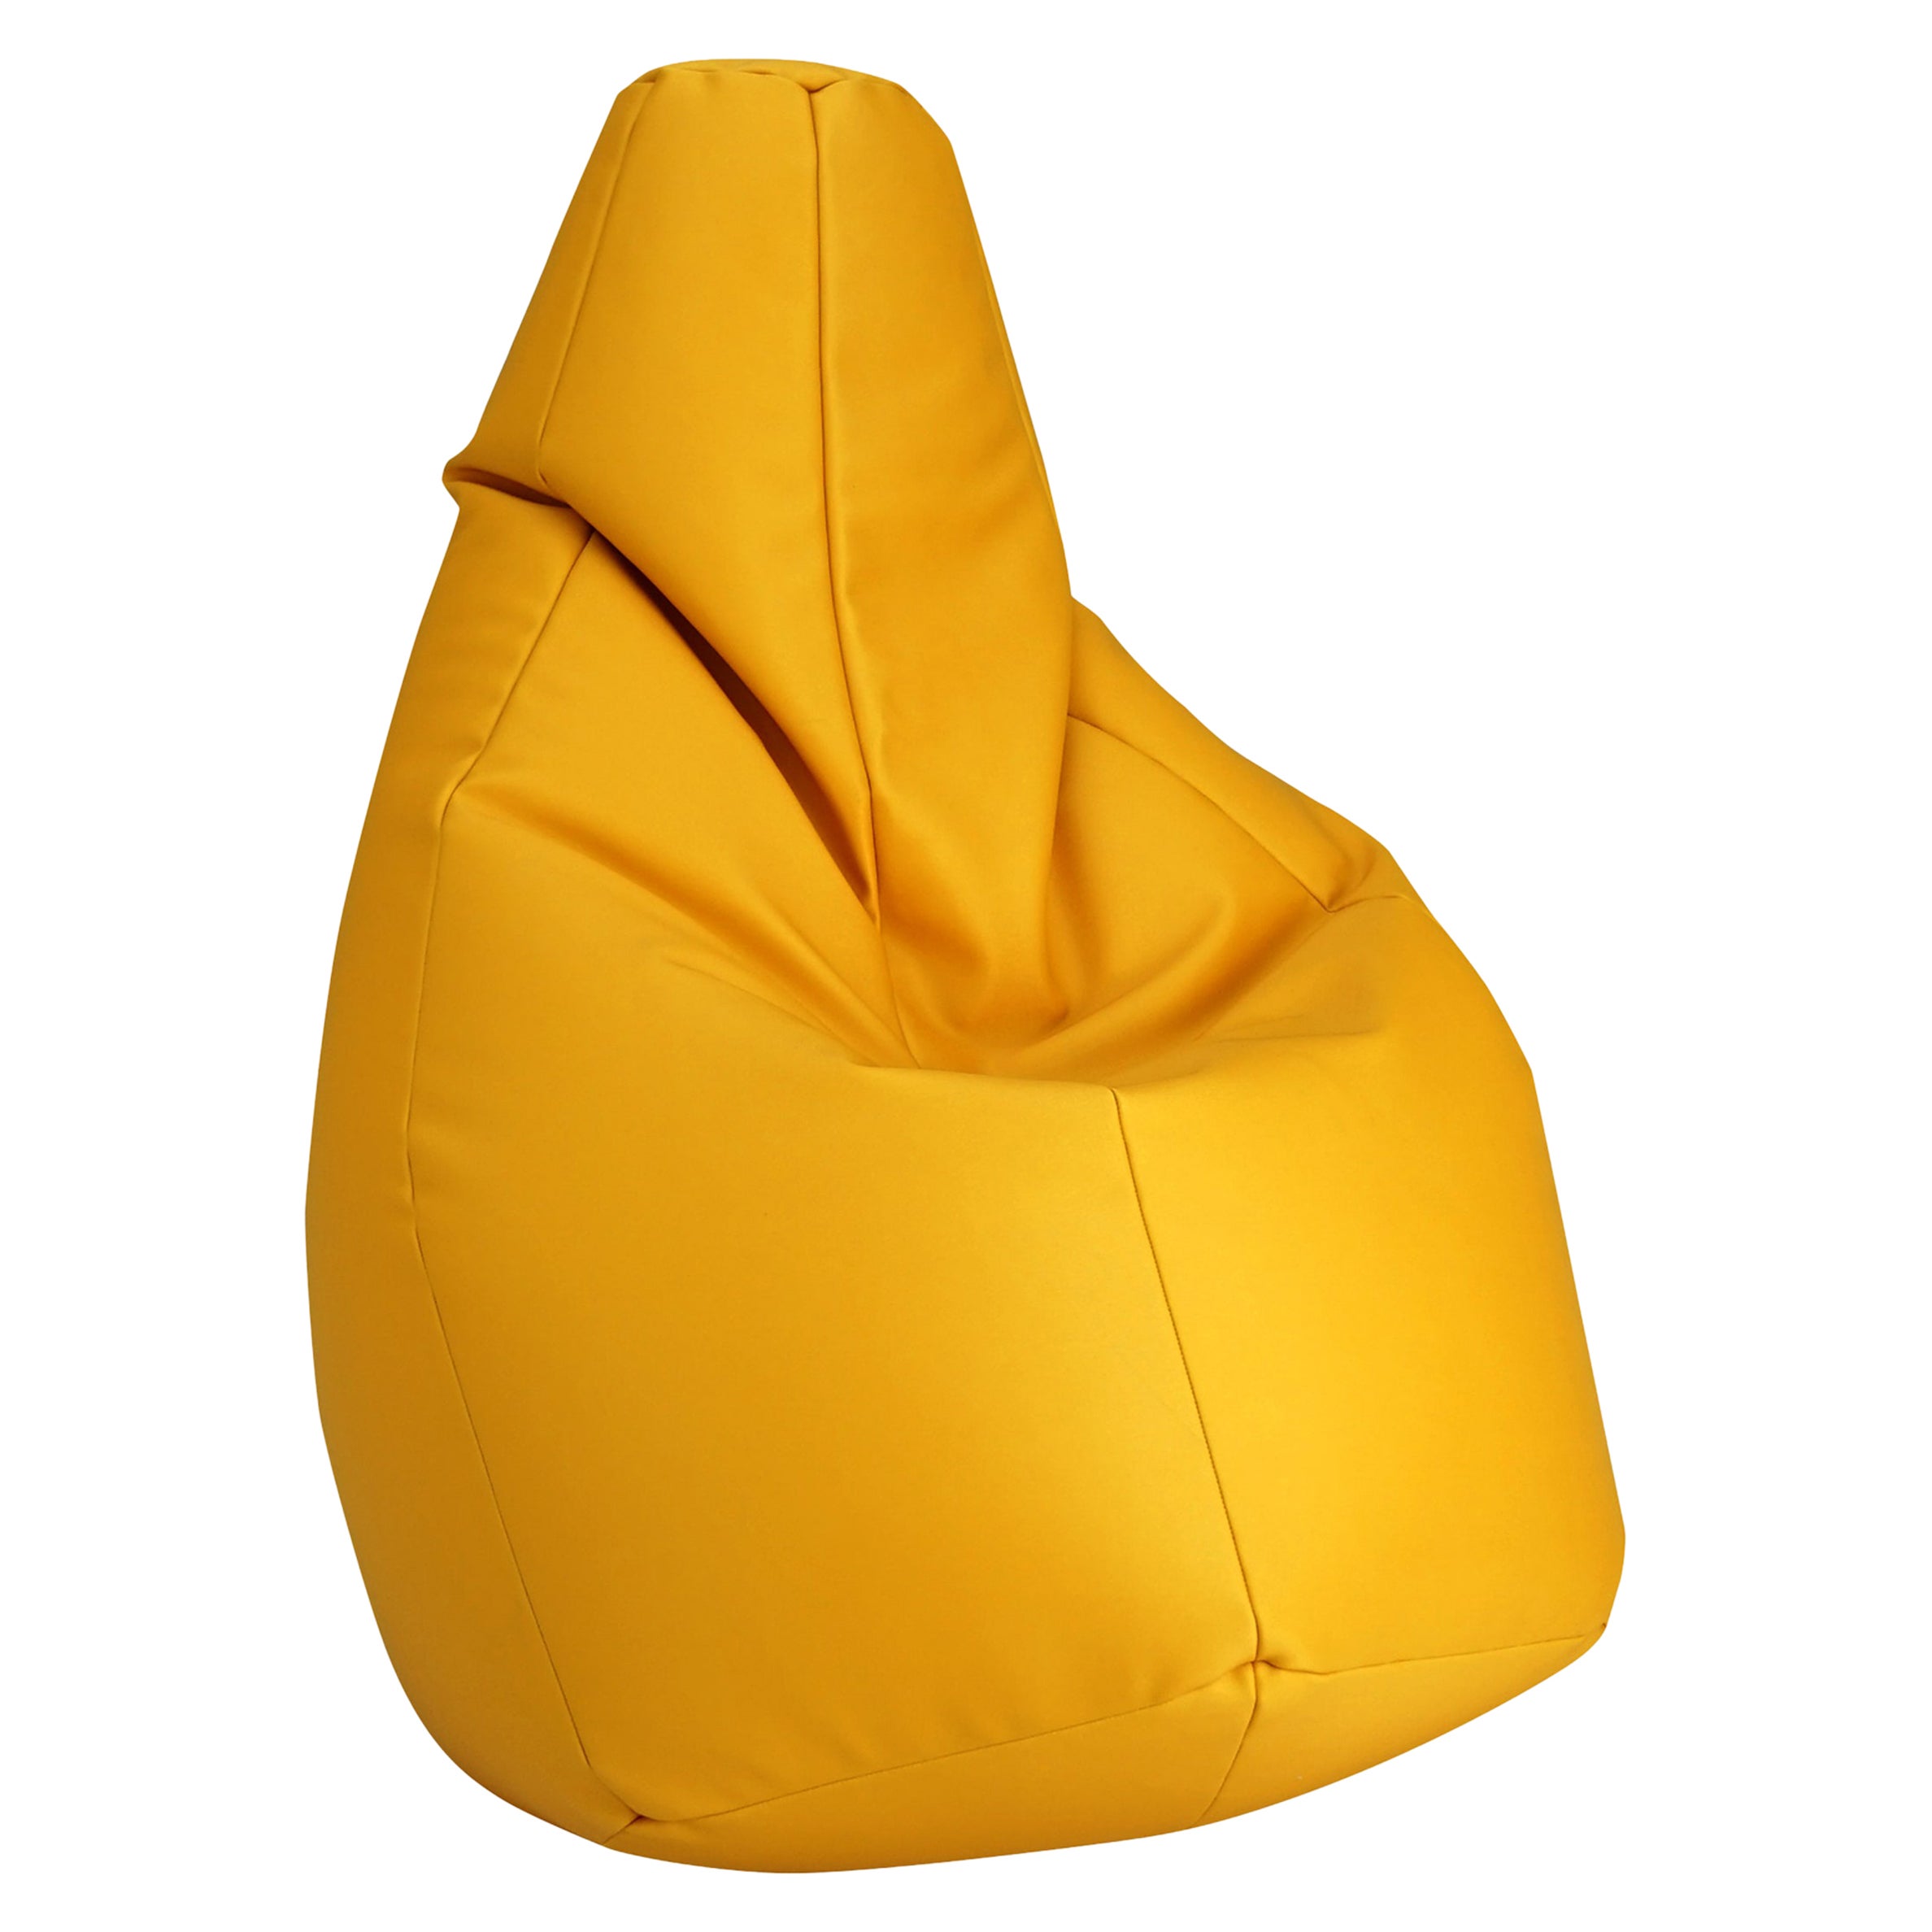 Zanotta Large Sacco in Yellow Vip Fabric by Gatti, Paolini, Teodoro